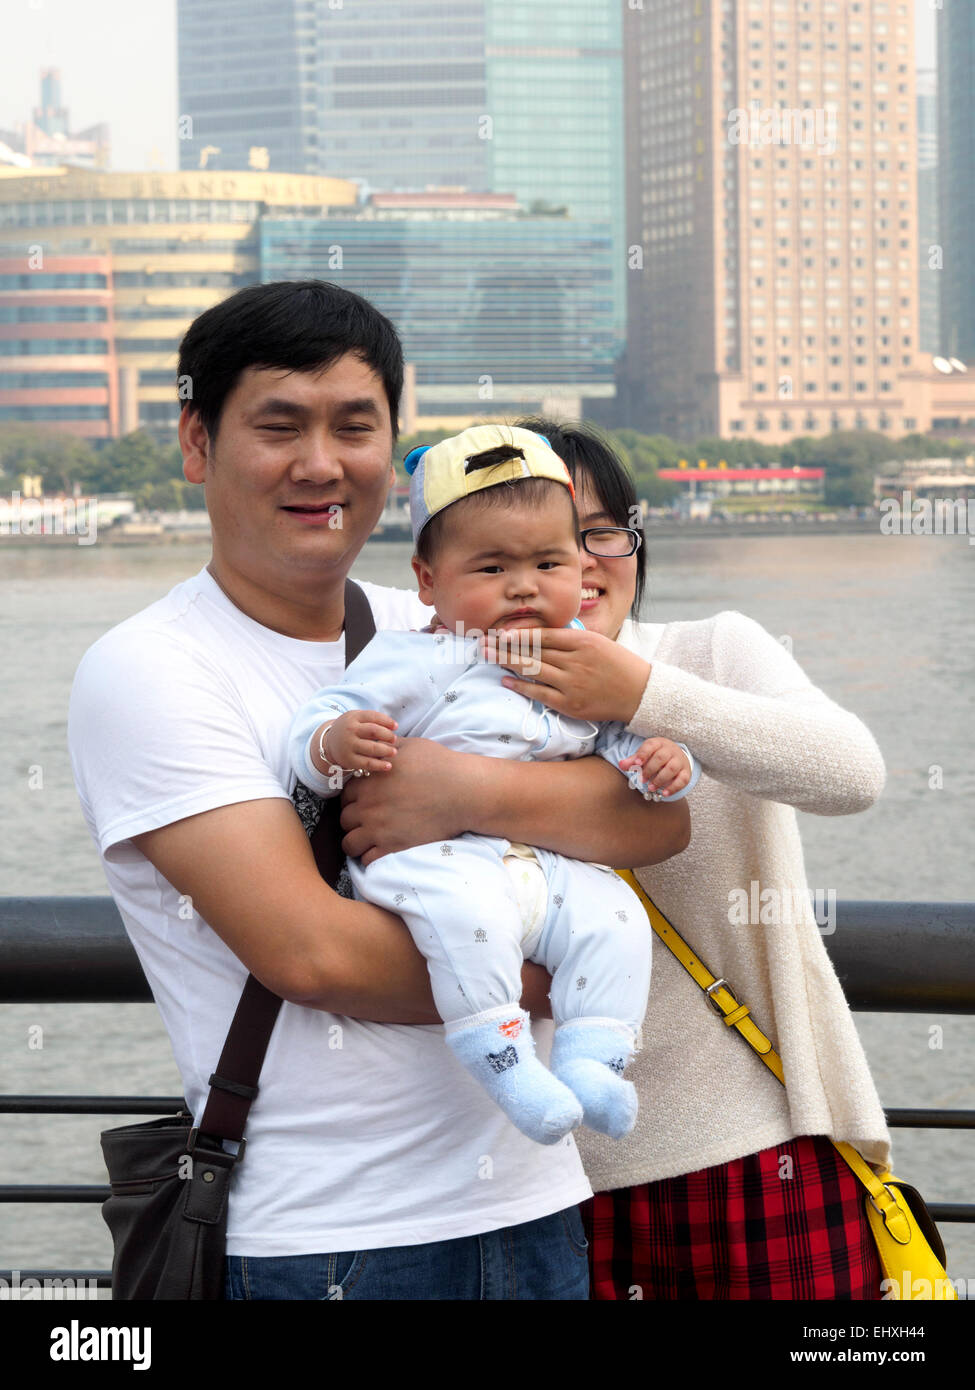 Famille chinoise avec les parents holding baby Banque D'Images